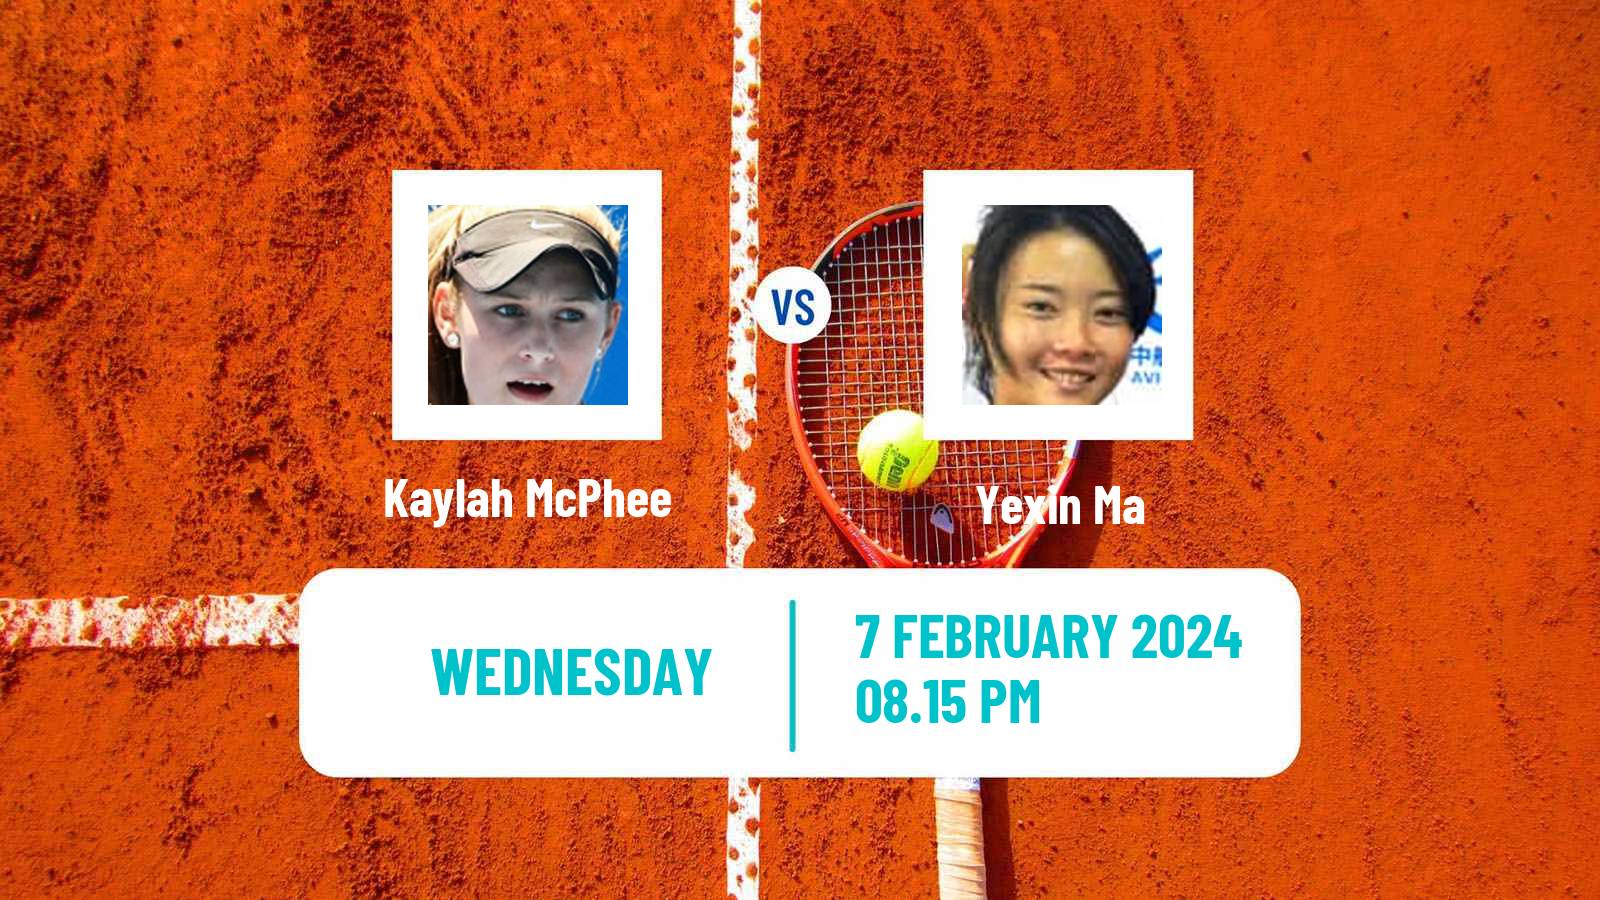 Tennis ITF W75 Burnie 2 Women Kaylah McPhee - Yexin Ma